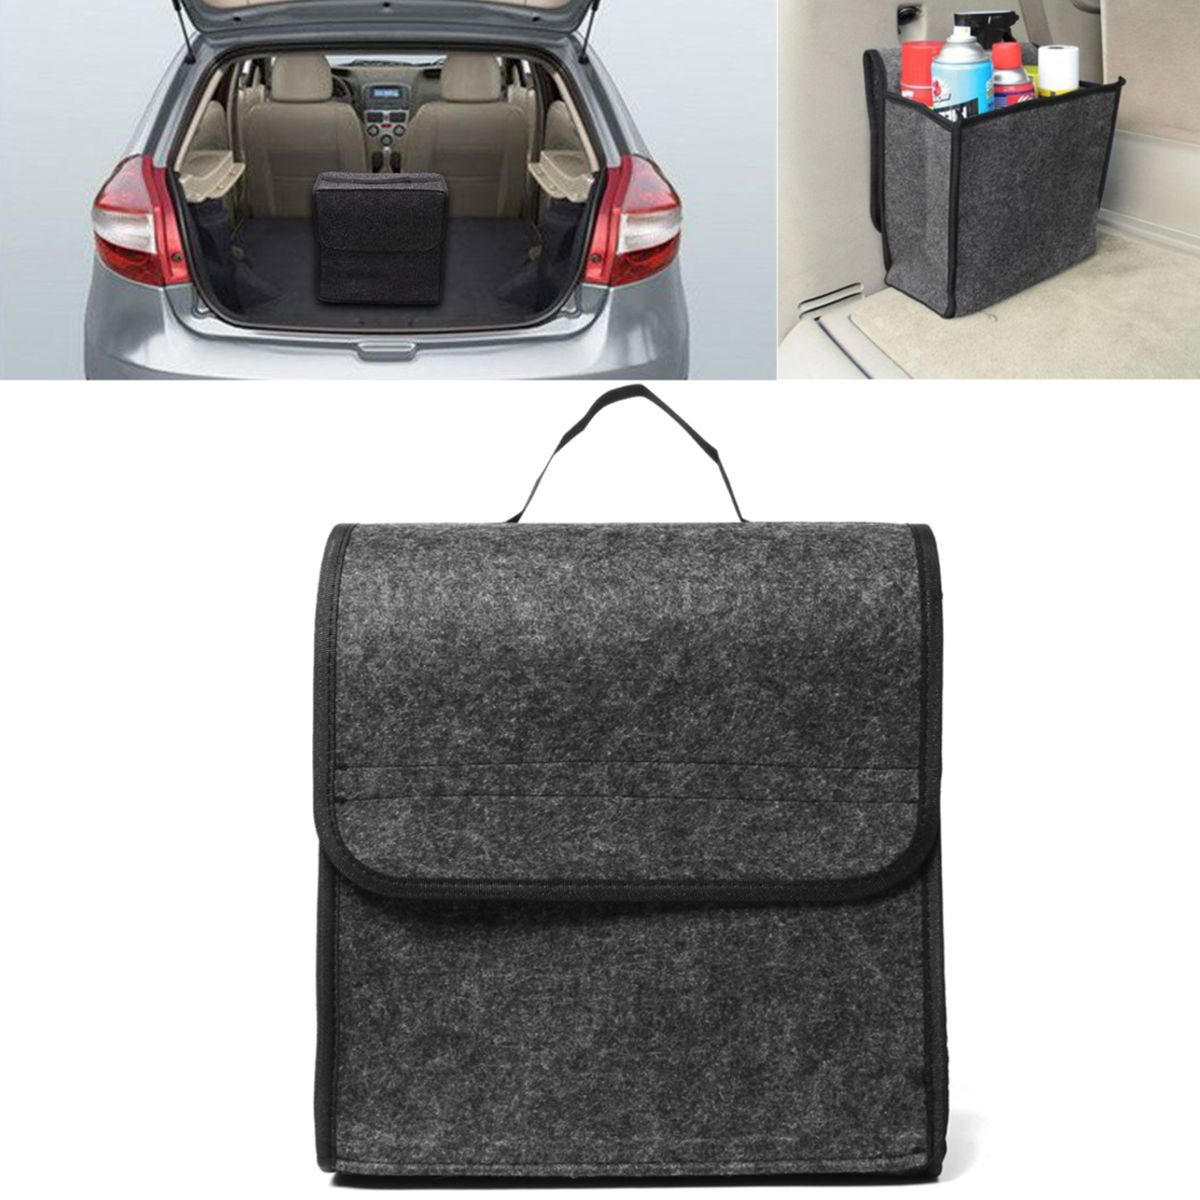 11.8x11.4 x6.3inch Felt Cloth Foldable Car Back Rear Seat Organizer Travel Storage Interior Bag Hold 2